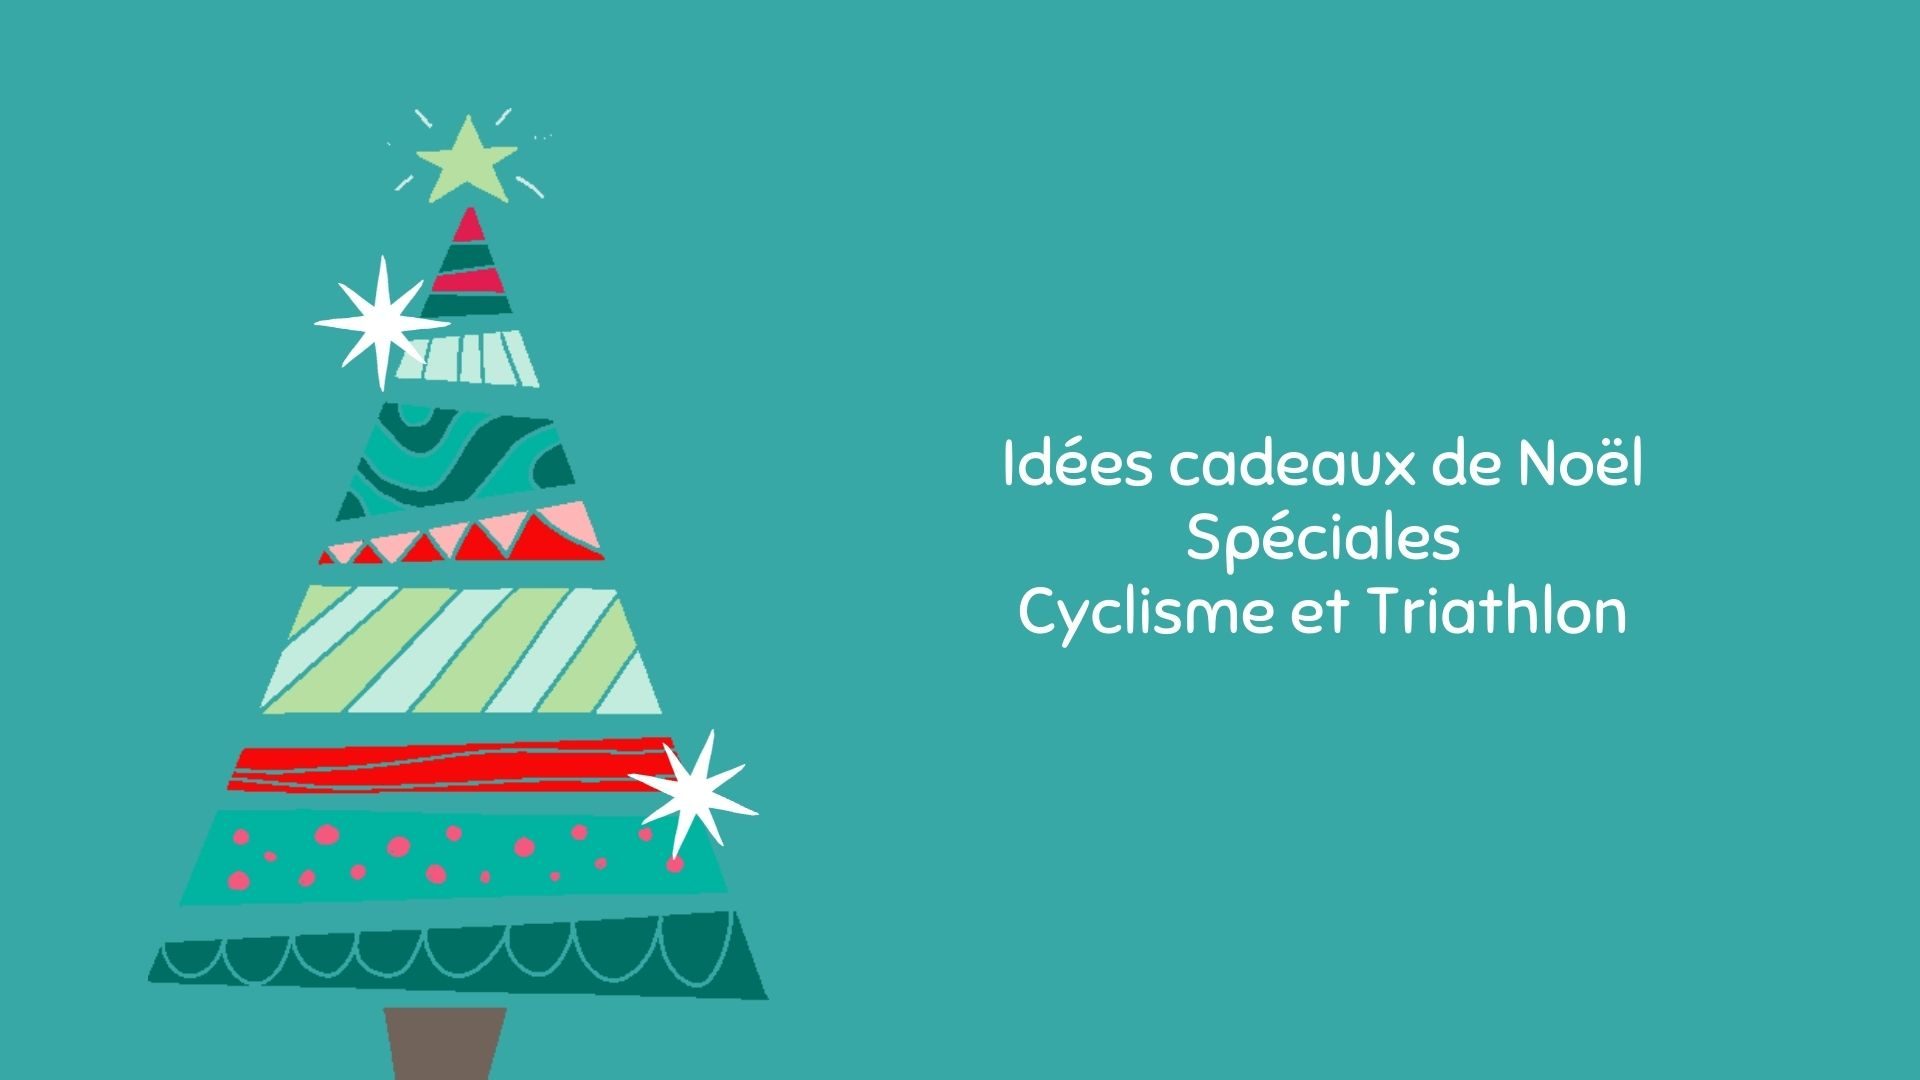 80 Idées Cadeaux de Noël Spéciales : Cyclisme pour tous les budgets